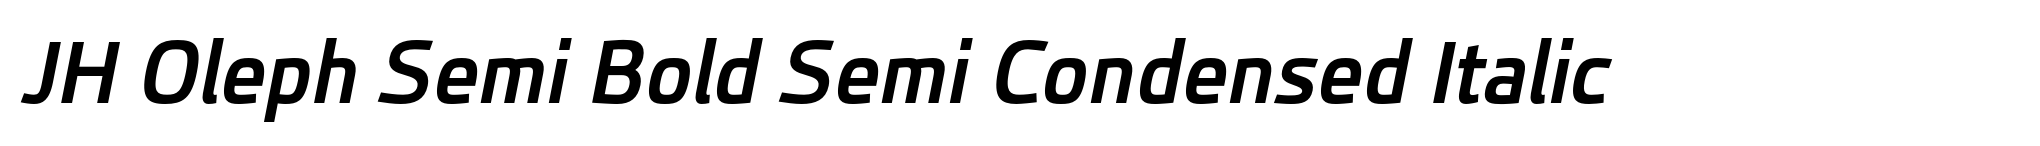 JH Oleph Semi Bold Semi Condensed Italic image